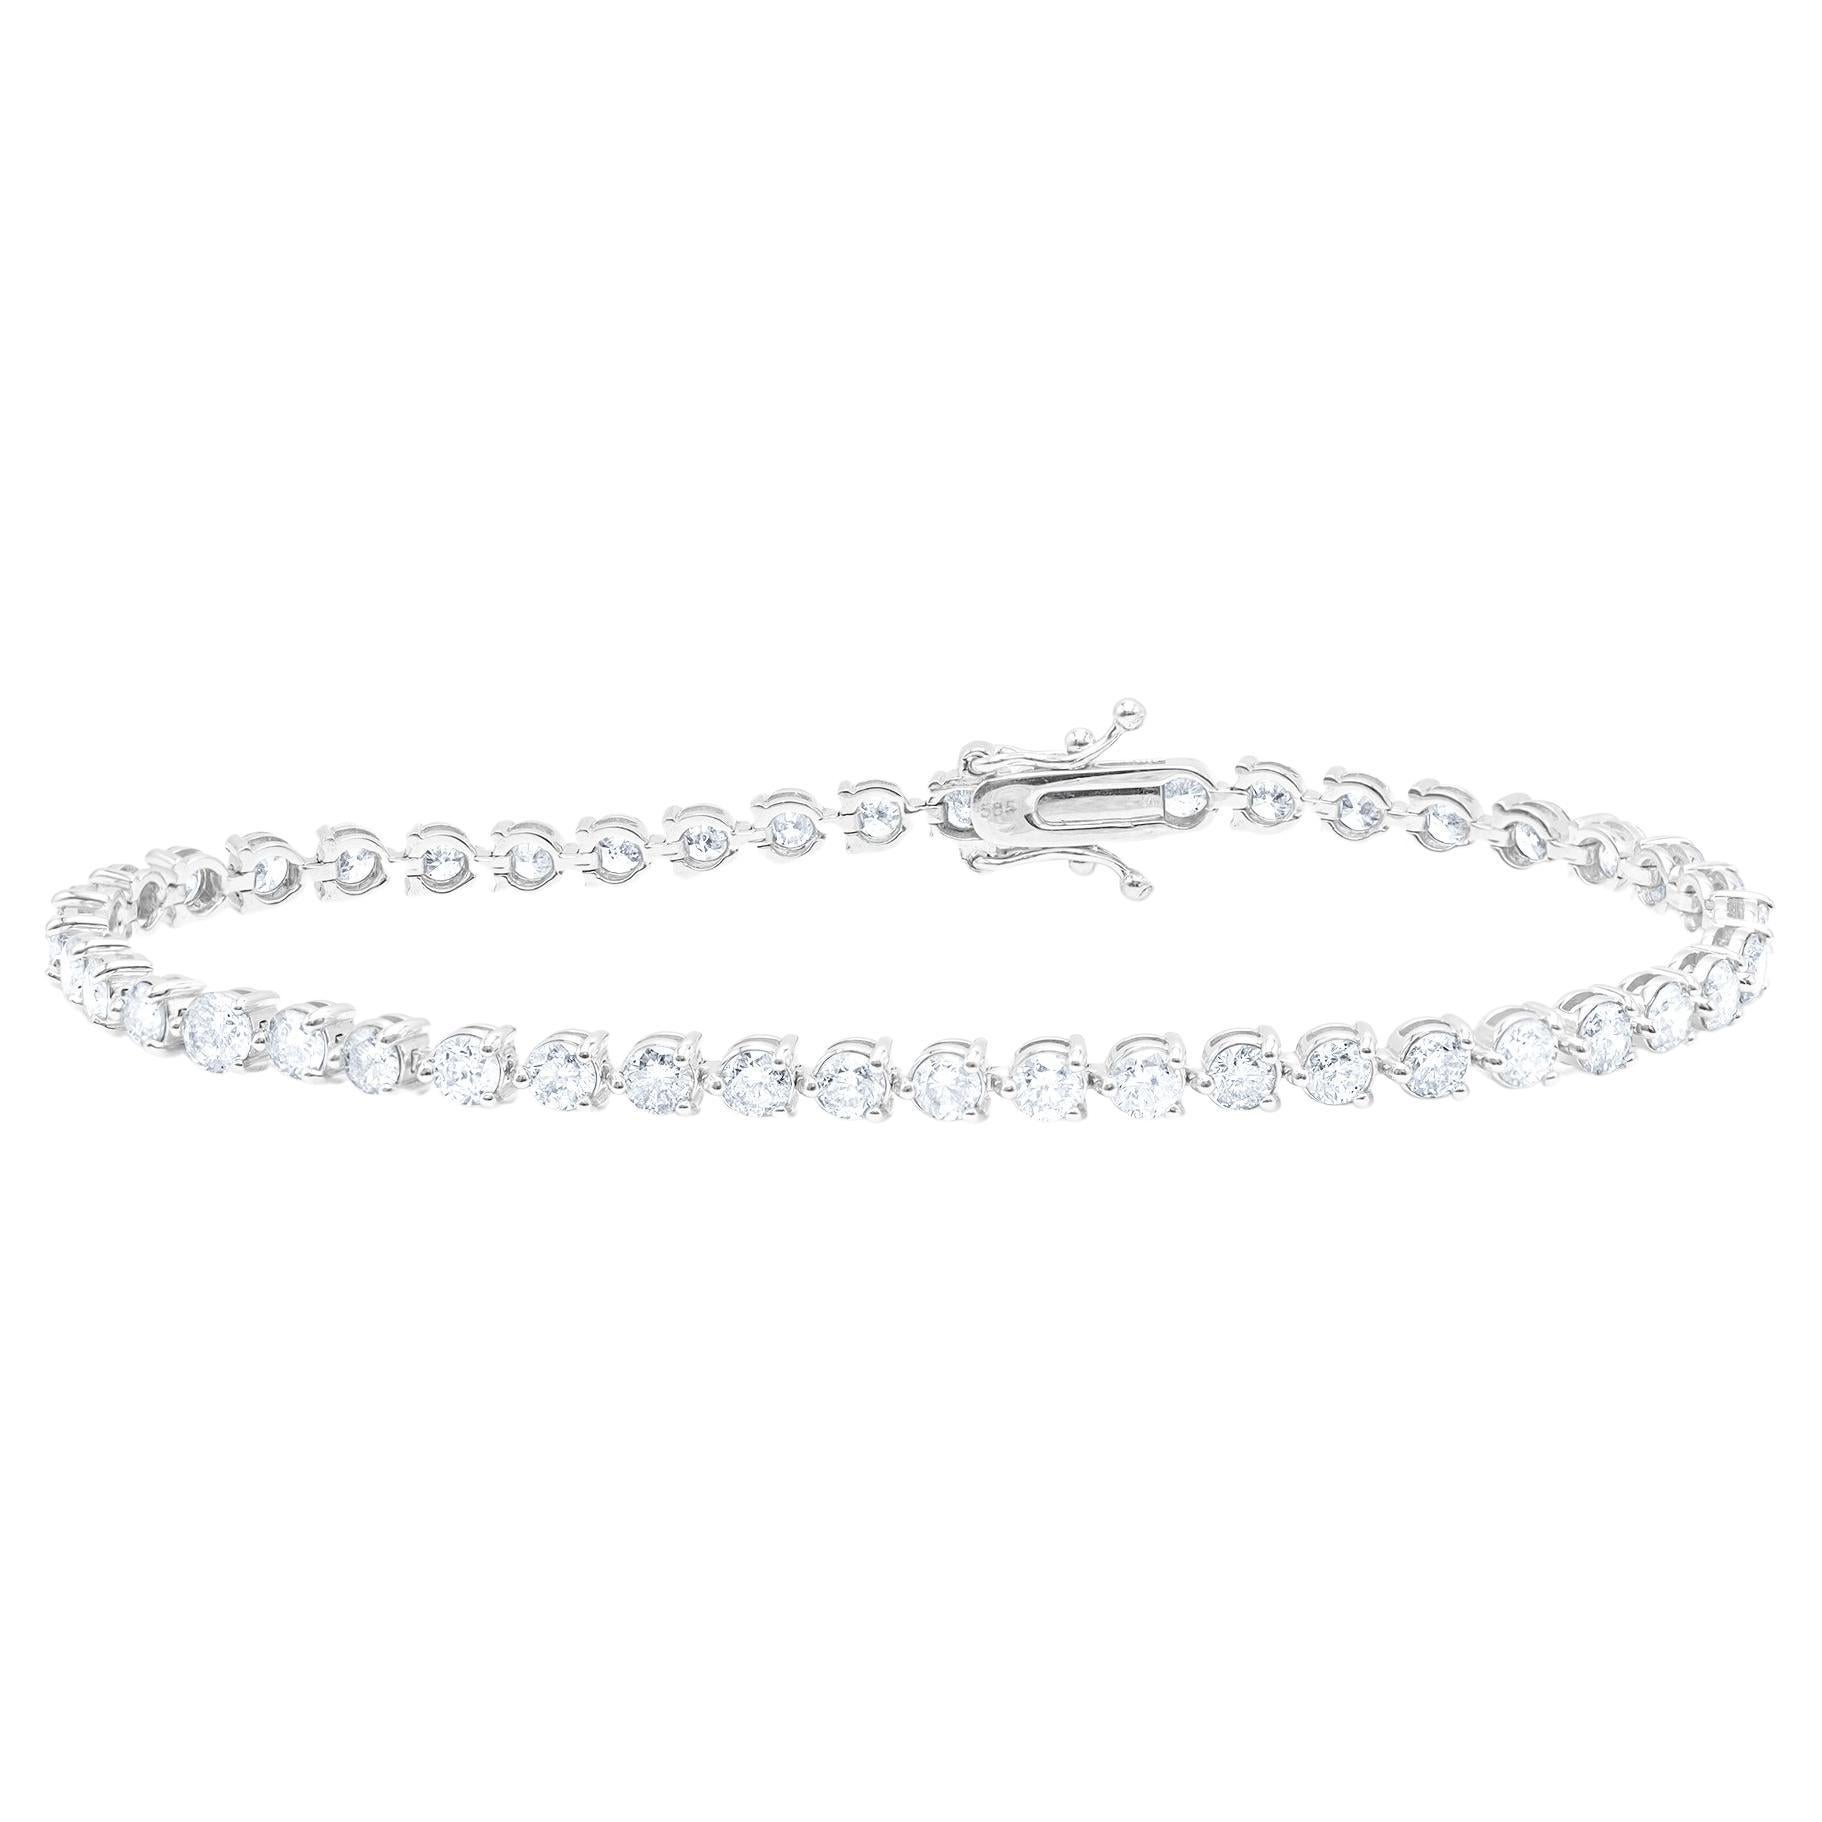 Diana M. 4,50 Cts 3 griffes personnalisées  Bracelet tennis en or blanc 14 carats serti de diamants